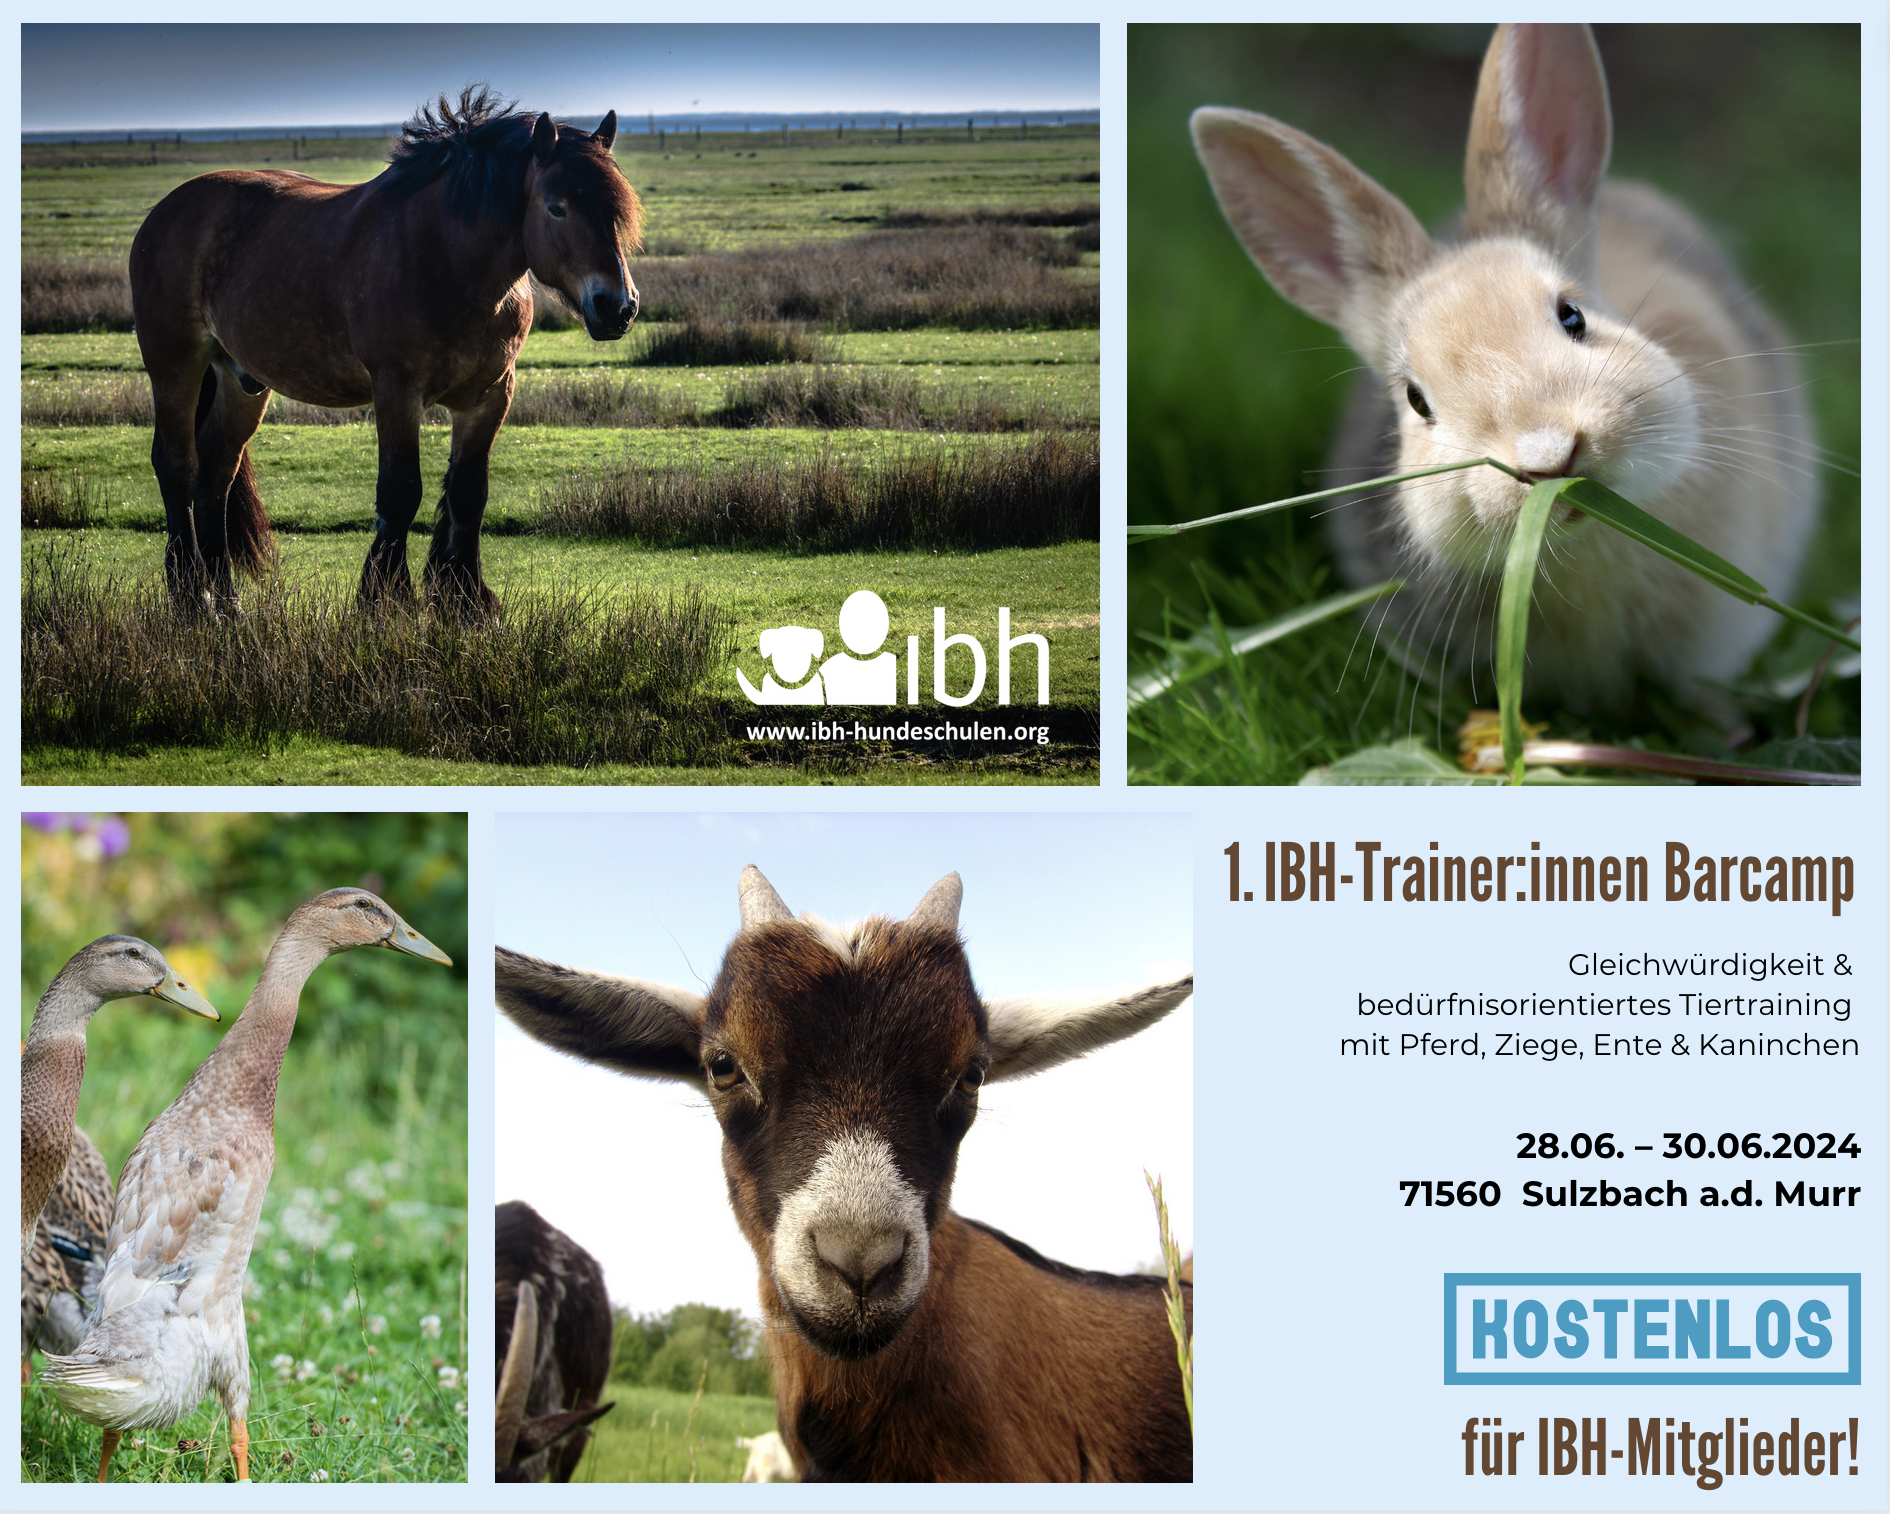 IBH-Trainer:innen Barcamp - Gleichwürdigkeit & bedürfnisorientiertes Tiertraining mit Pferd, Ziege, Ente & Kaninchen